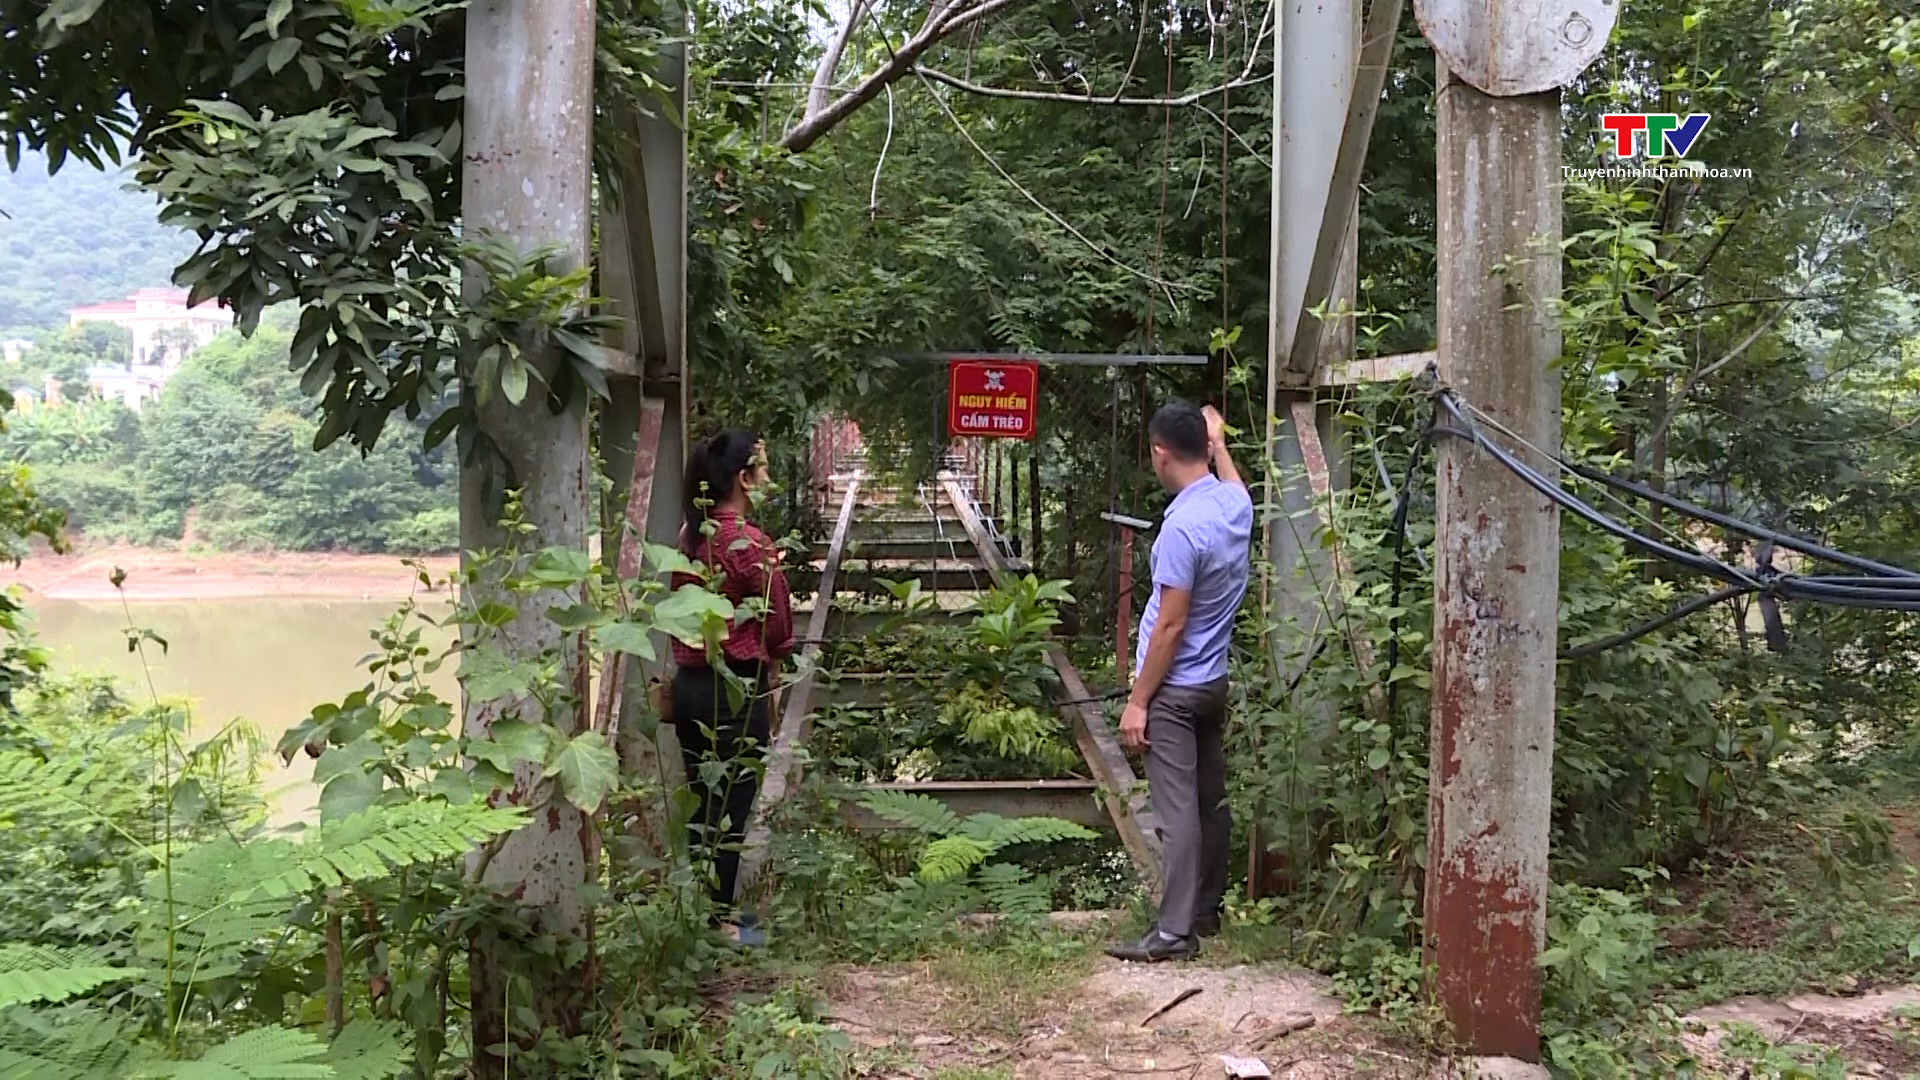 Thiếu kinh phí, 2 cầu treo hư hỏng trên địa bàn huyện Mường Lát chưa thể tháo dỡ- Ảnh 2.